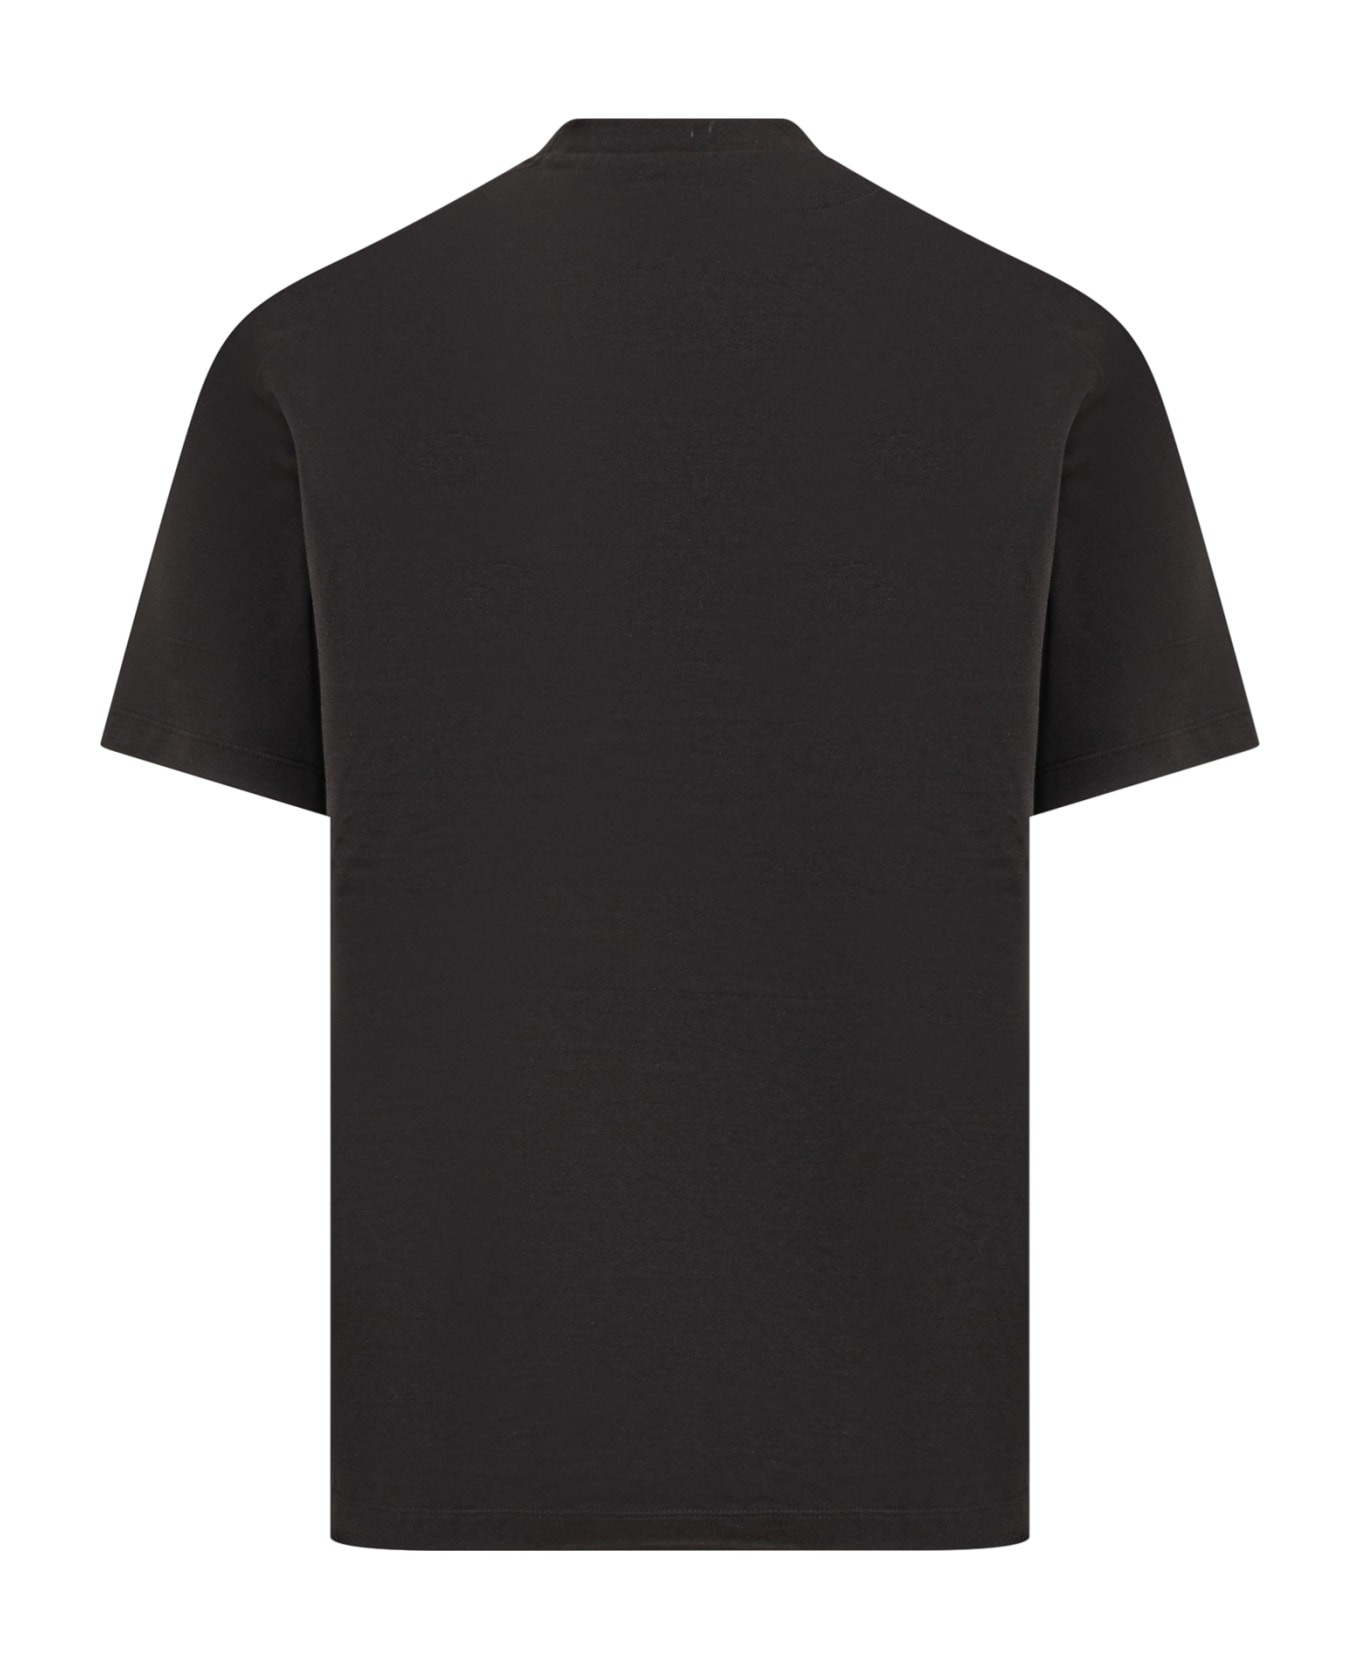 Y-3 Gfx T-shirt - BLACK